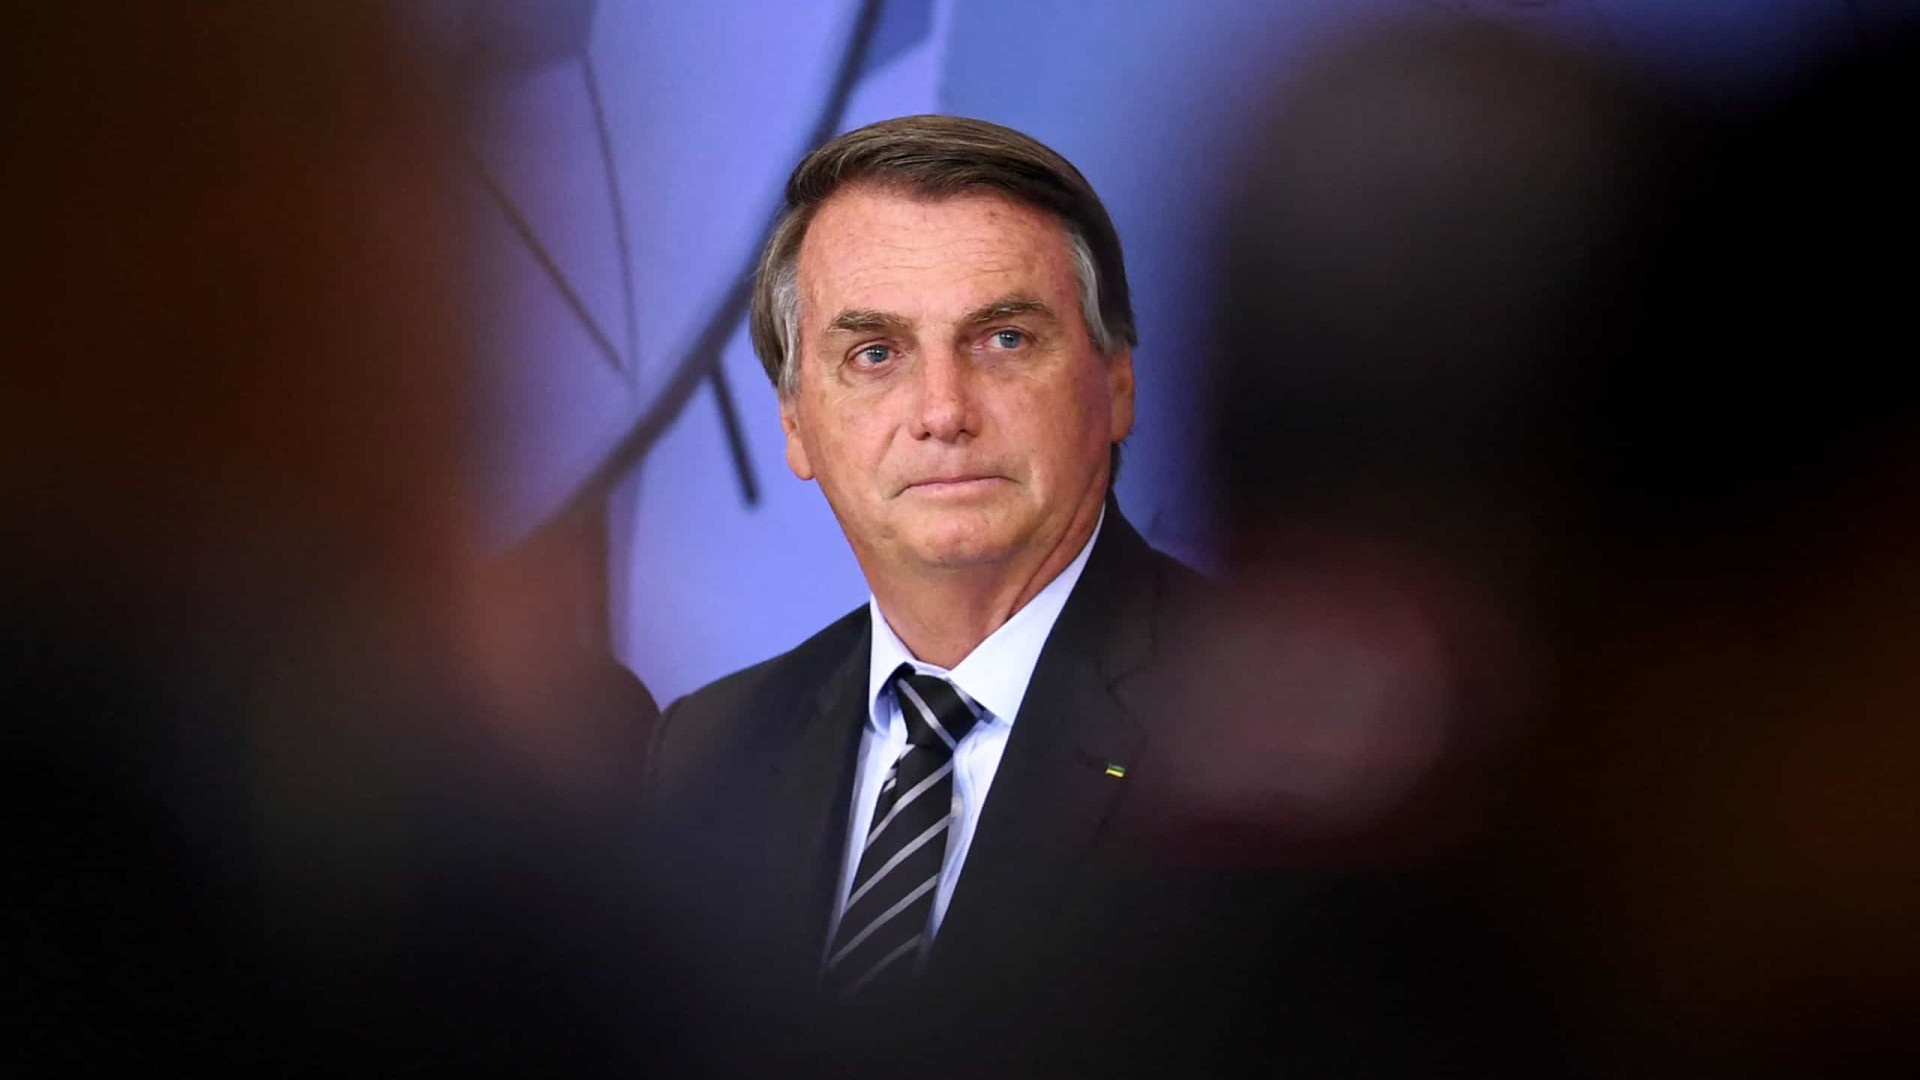 Adversários políticos prestam condolências a Bolsonaro pela morte da mãe